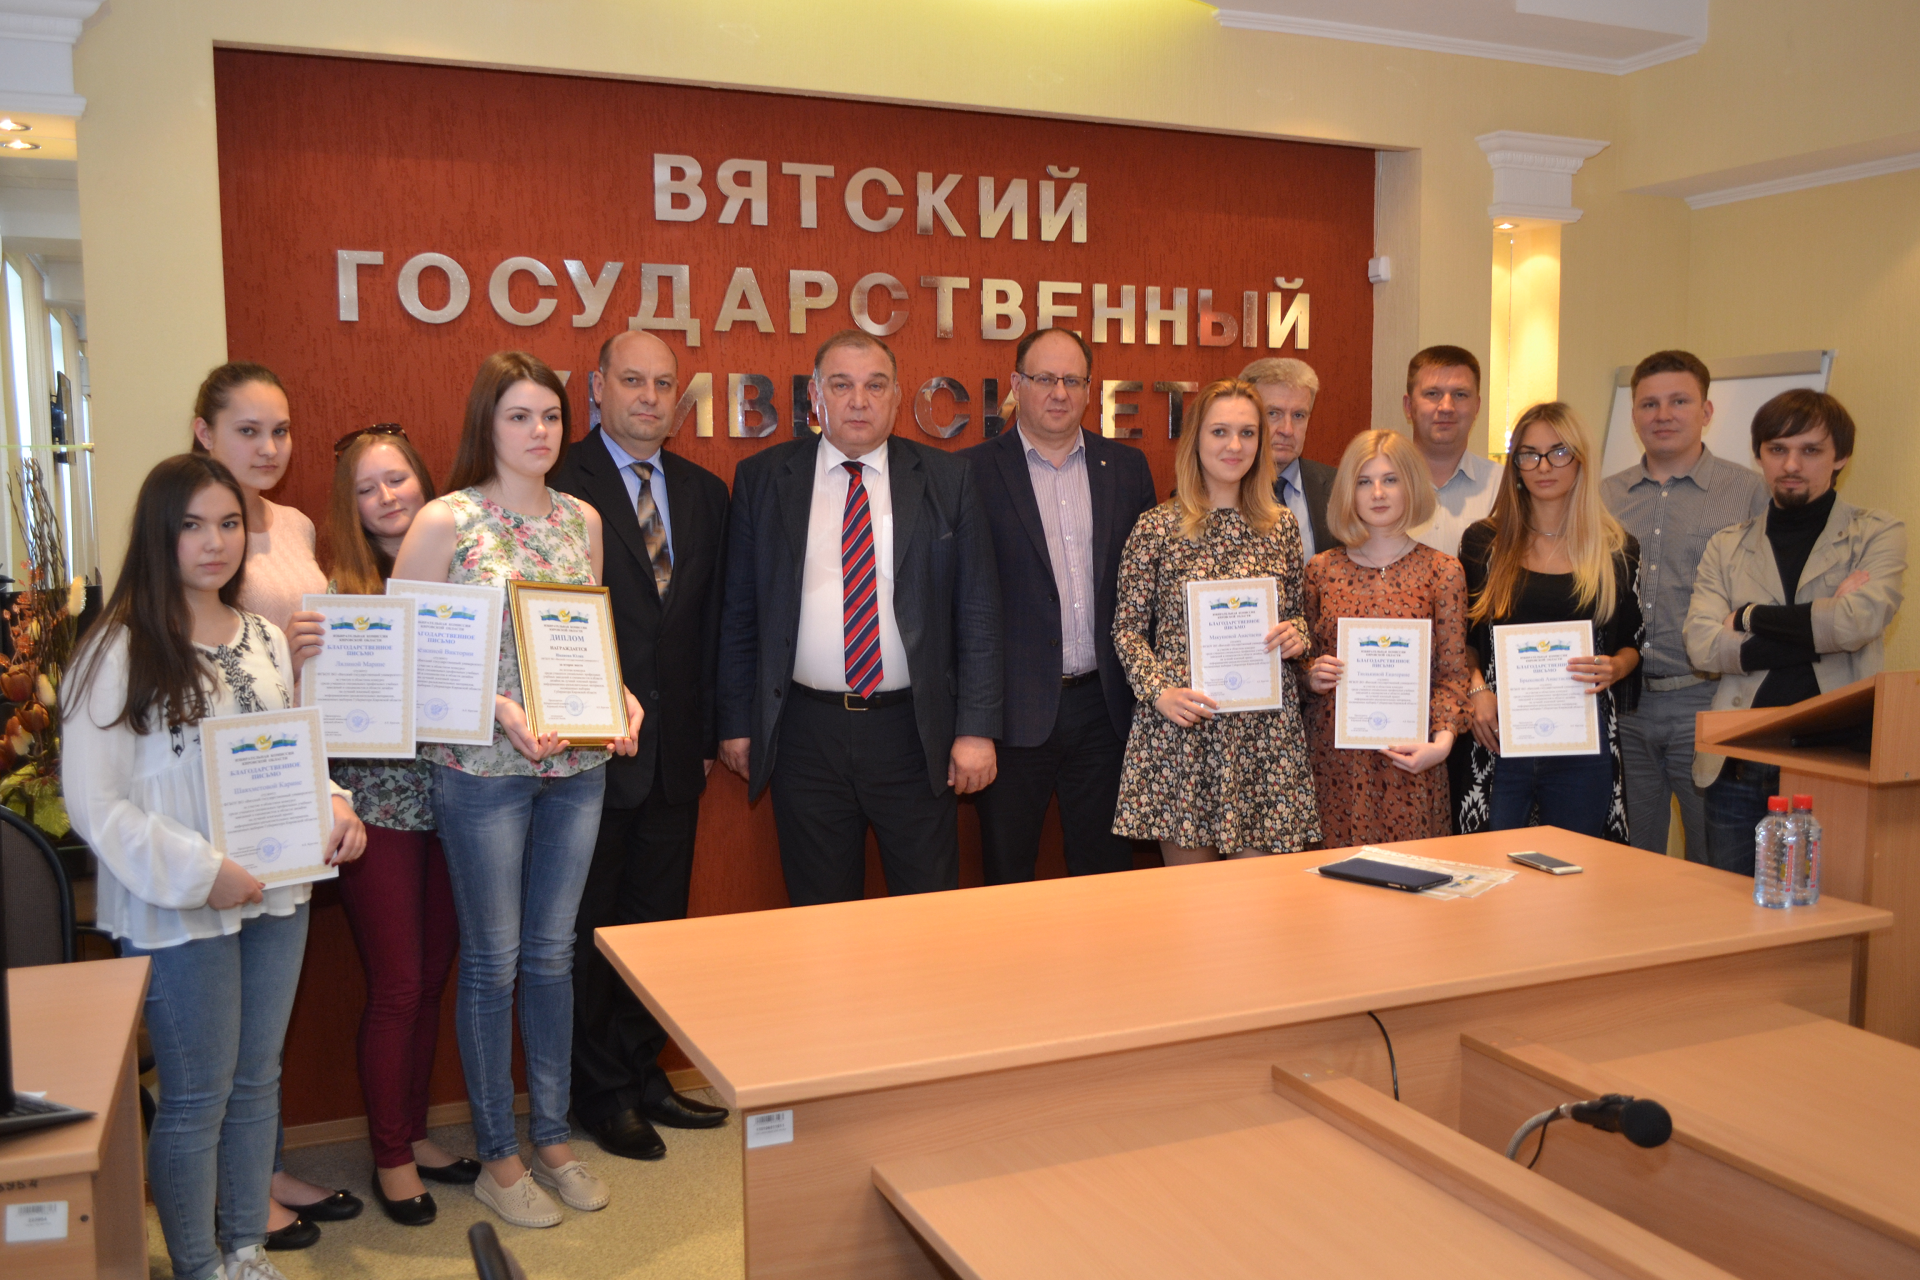 Председатель Избирательной комиссии Кировской области Алексей Круглов вручил дипломы и благодарственные письма студентам ВятГУ